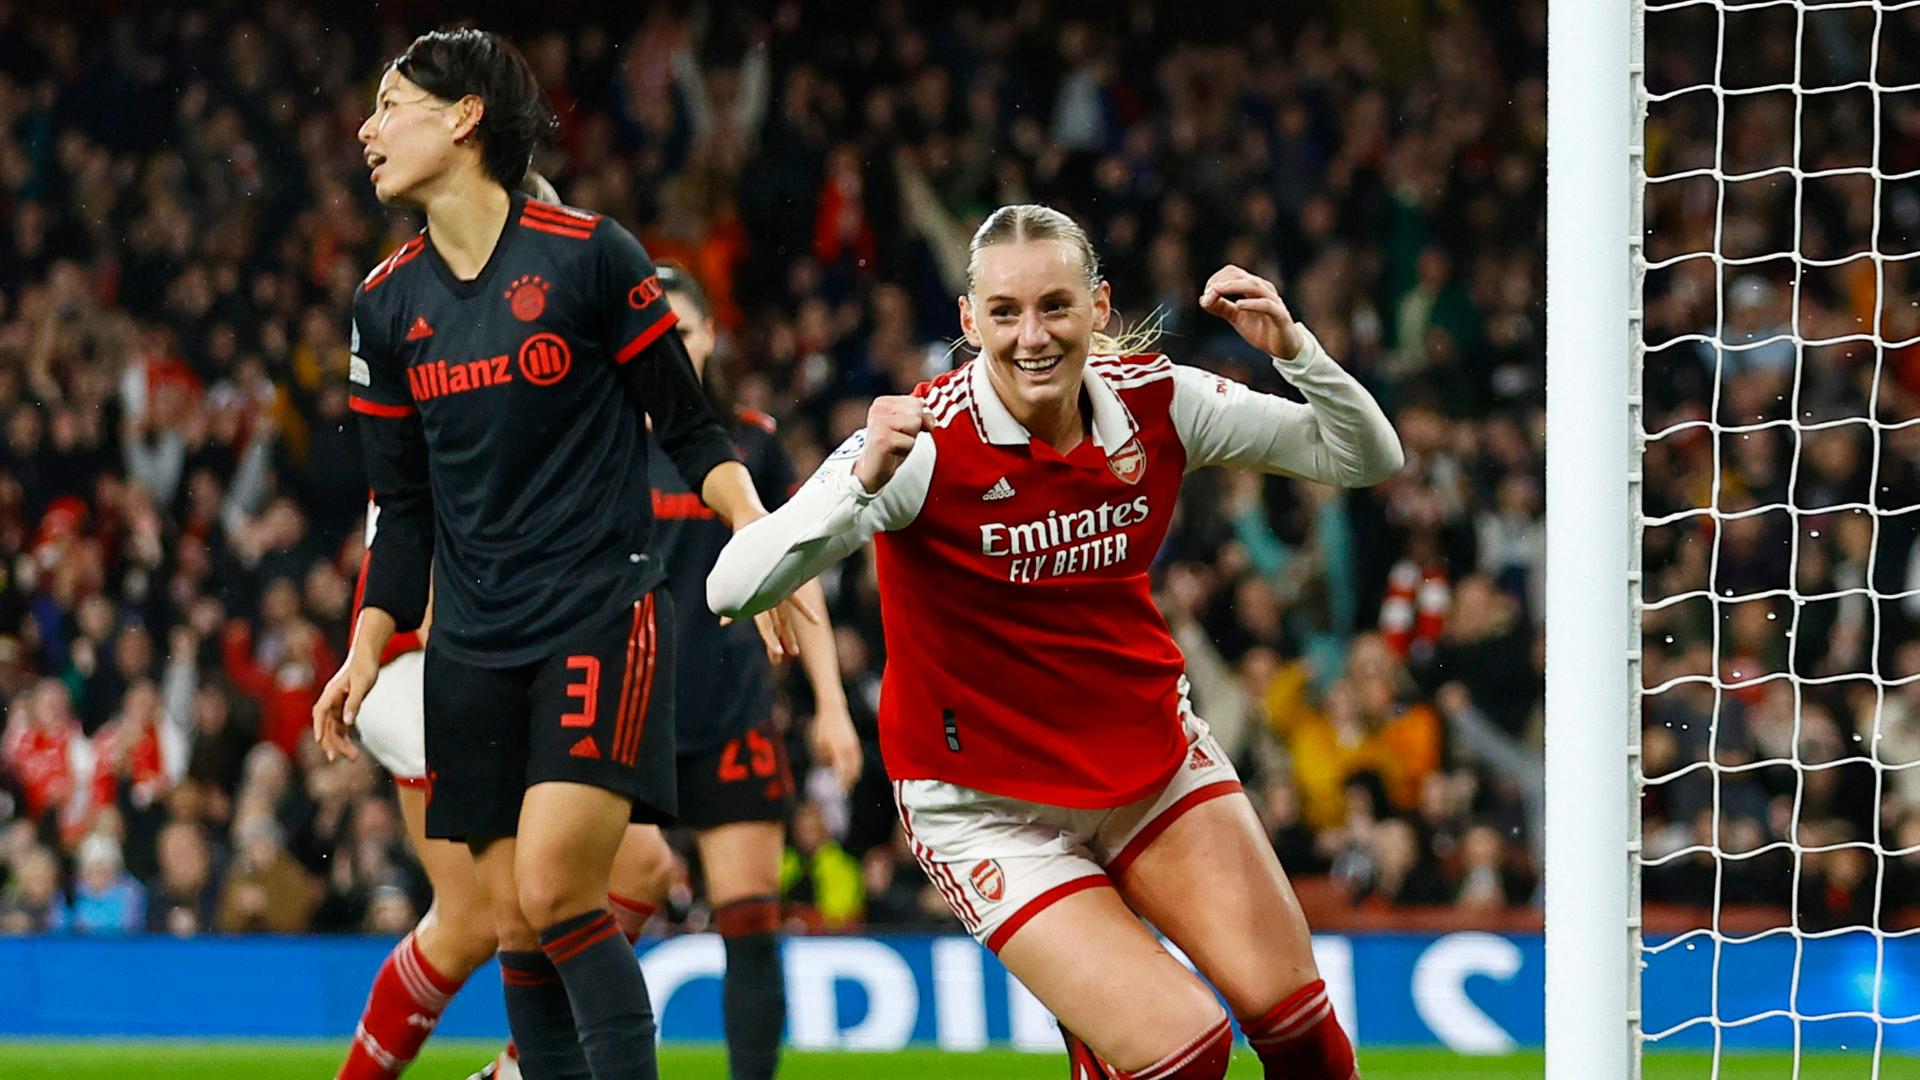 Stina Blackstenius vom FC Arsenal feiert ihr Tor zum 2:0 im Champions-League-Viertelfinal-Rückspiel gegen den FC Bayern München.